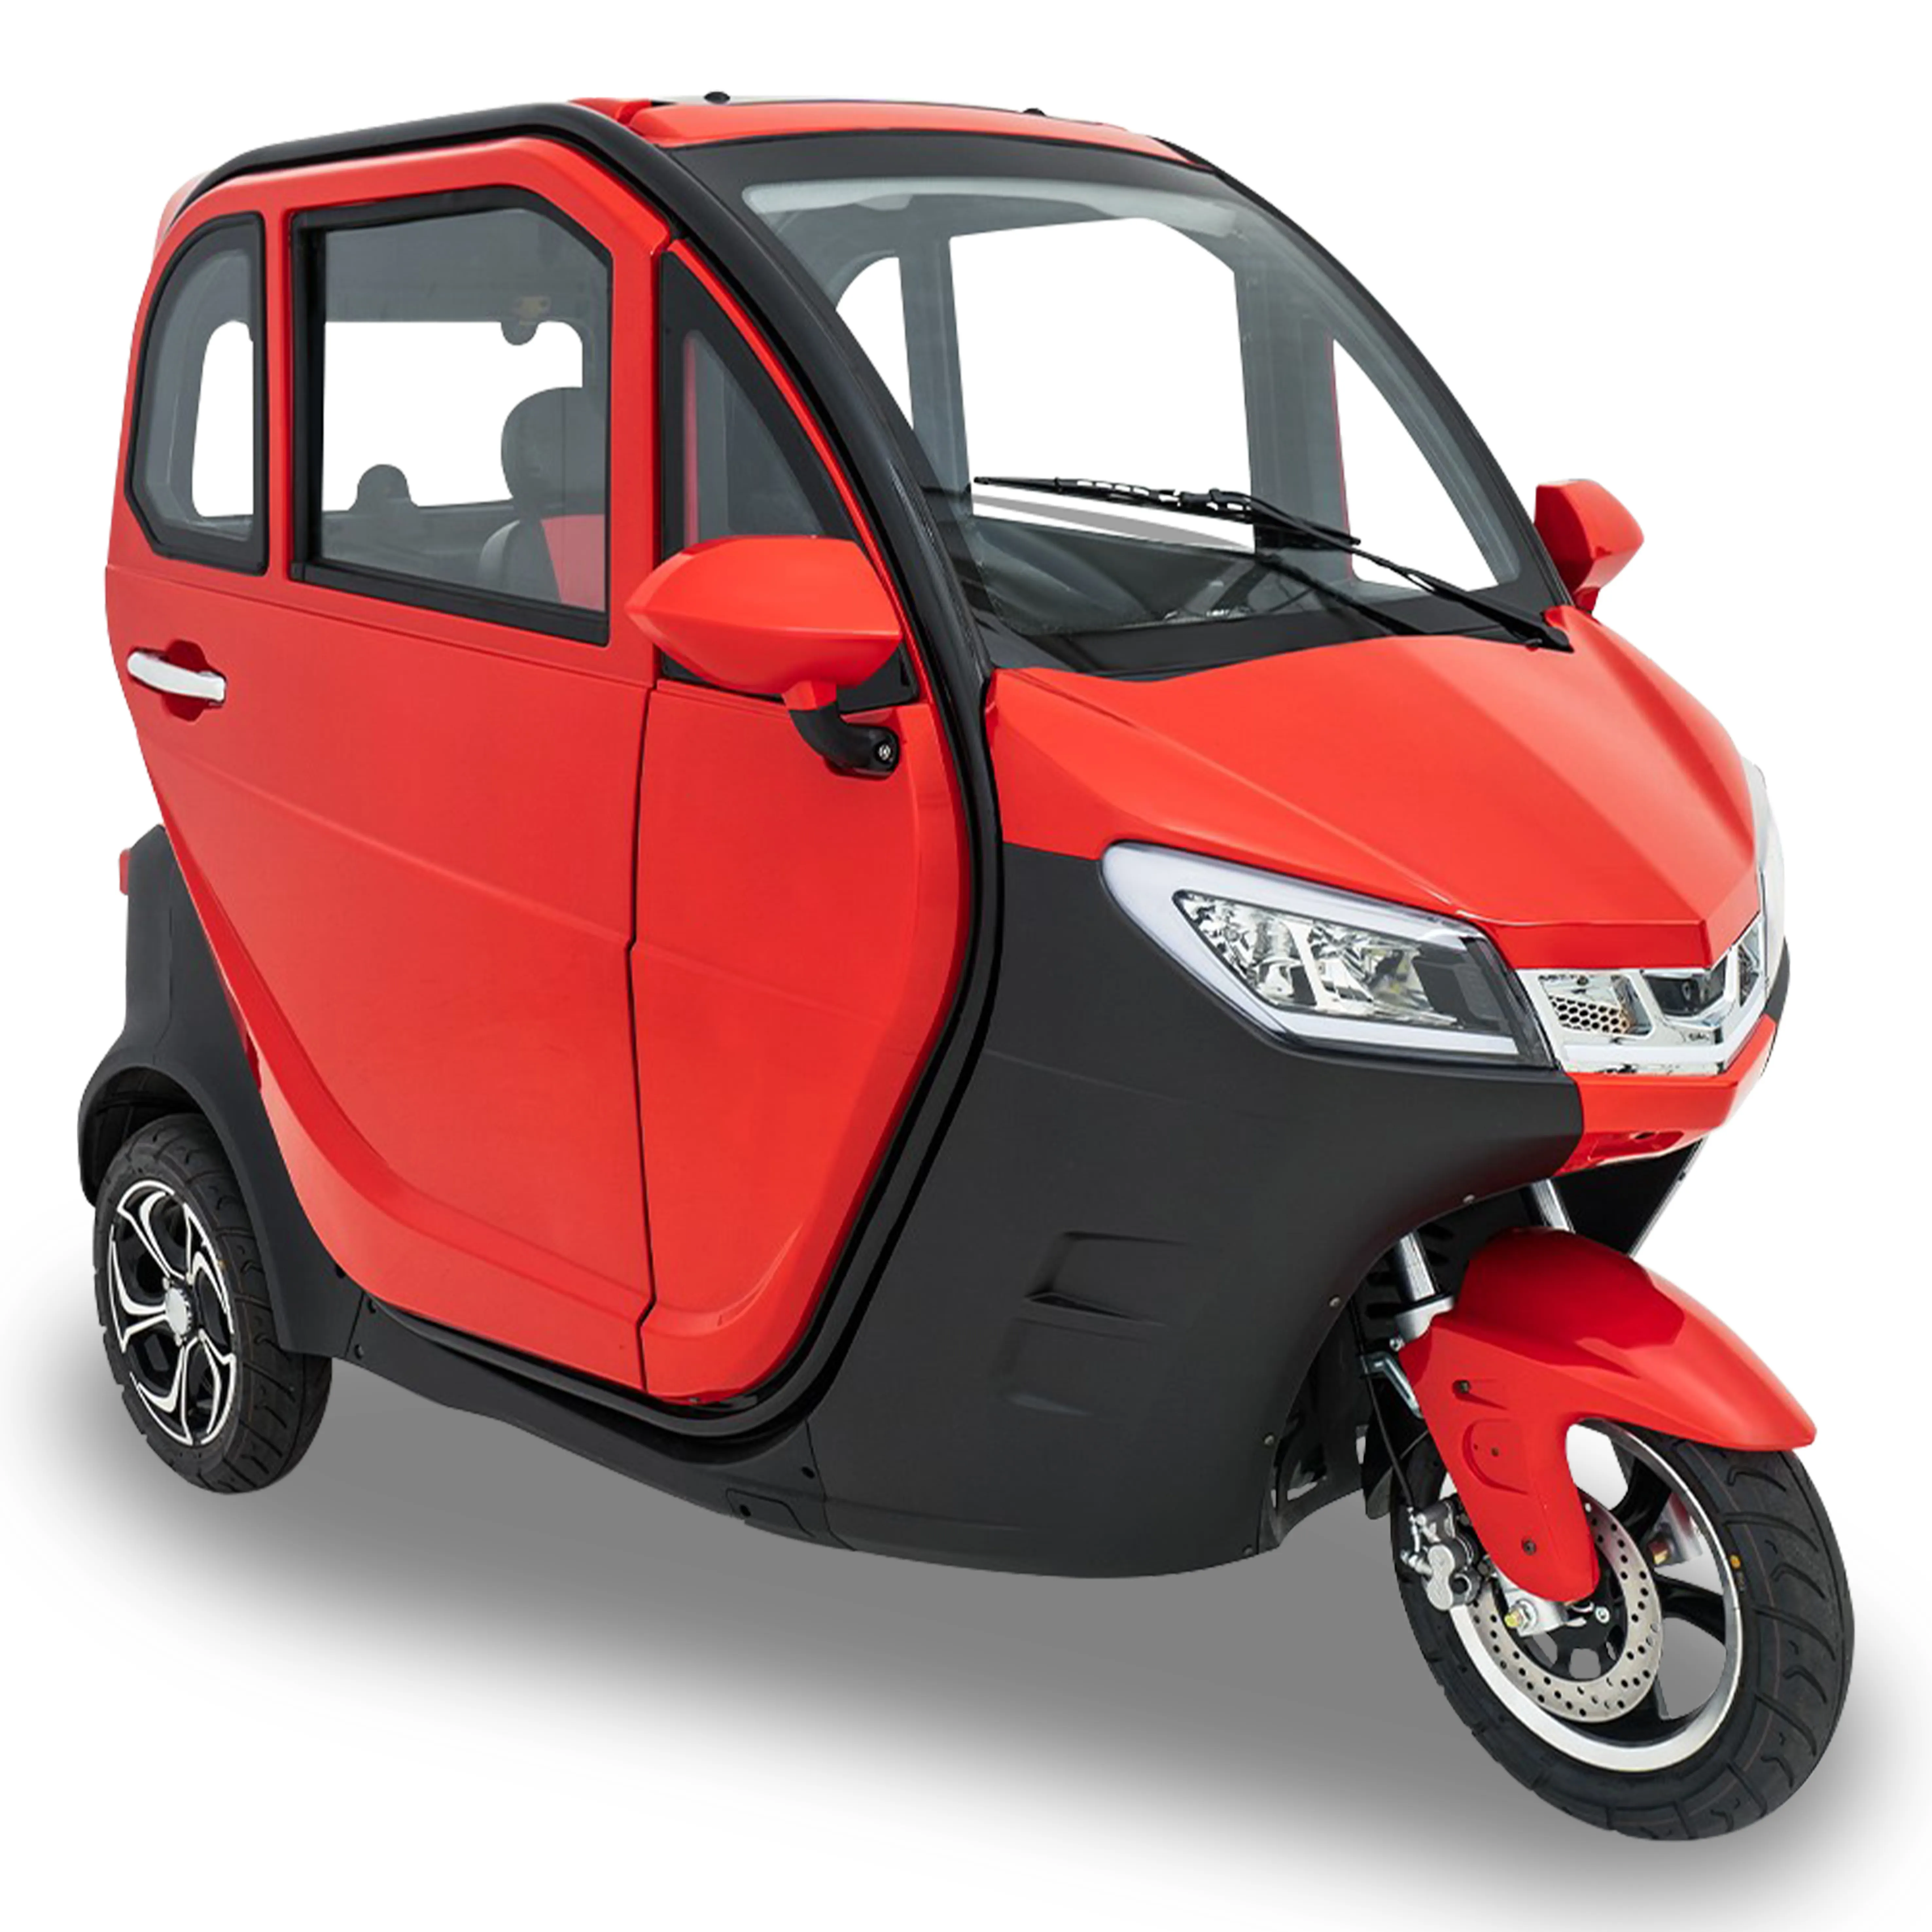 Yeni yakıt benzinli Motor üç tekerlekli bisiklet tamamen kapalı taşımak için yolcu için üç tekerlekli motosiklet taksi